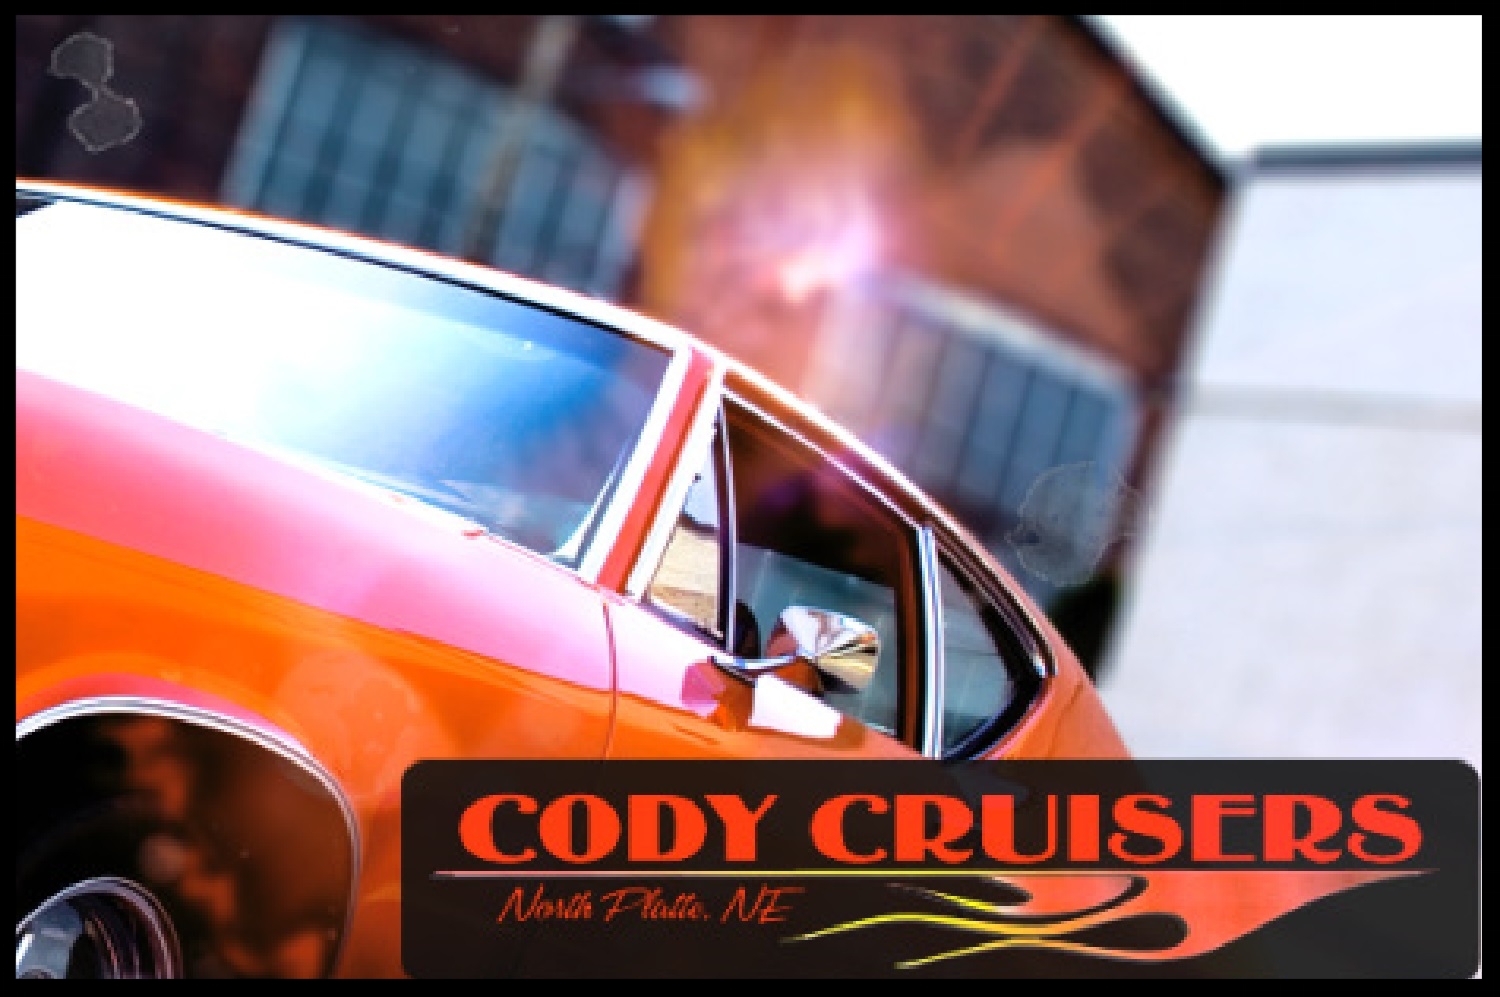 Colonel Cody's Cruise Show & Shine (North Platte, NE)